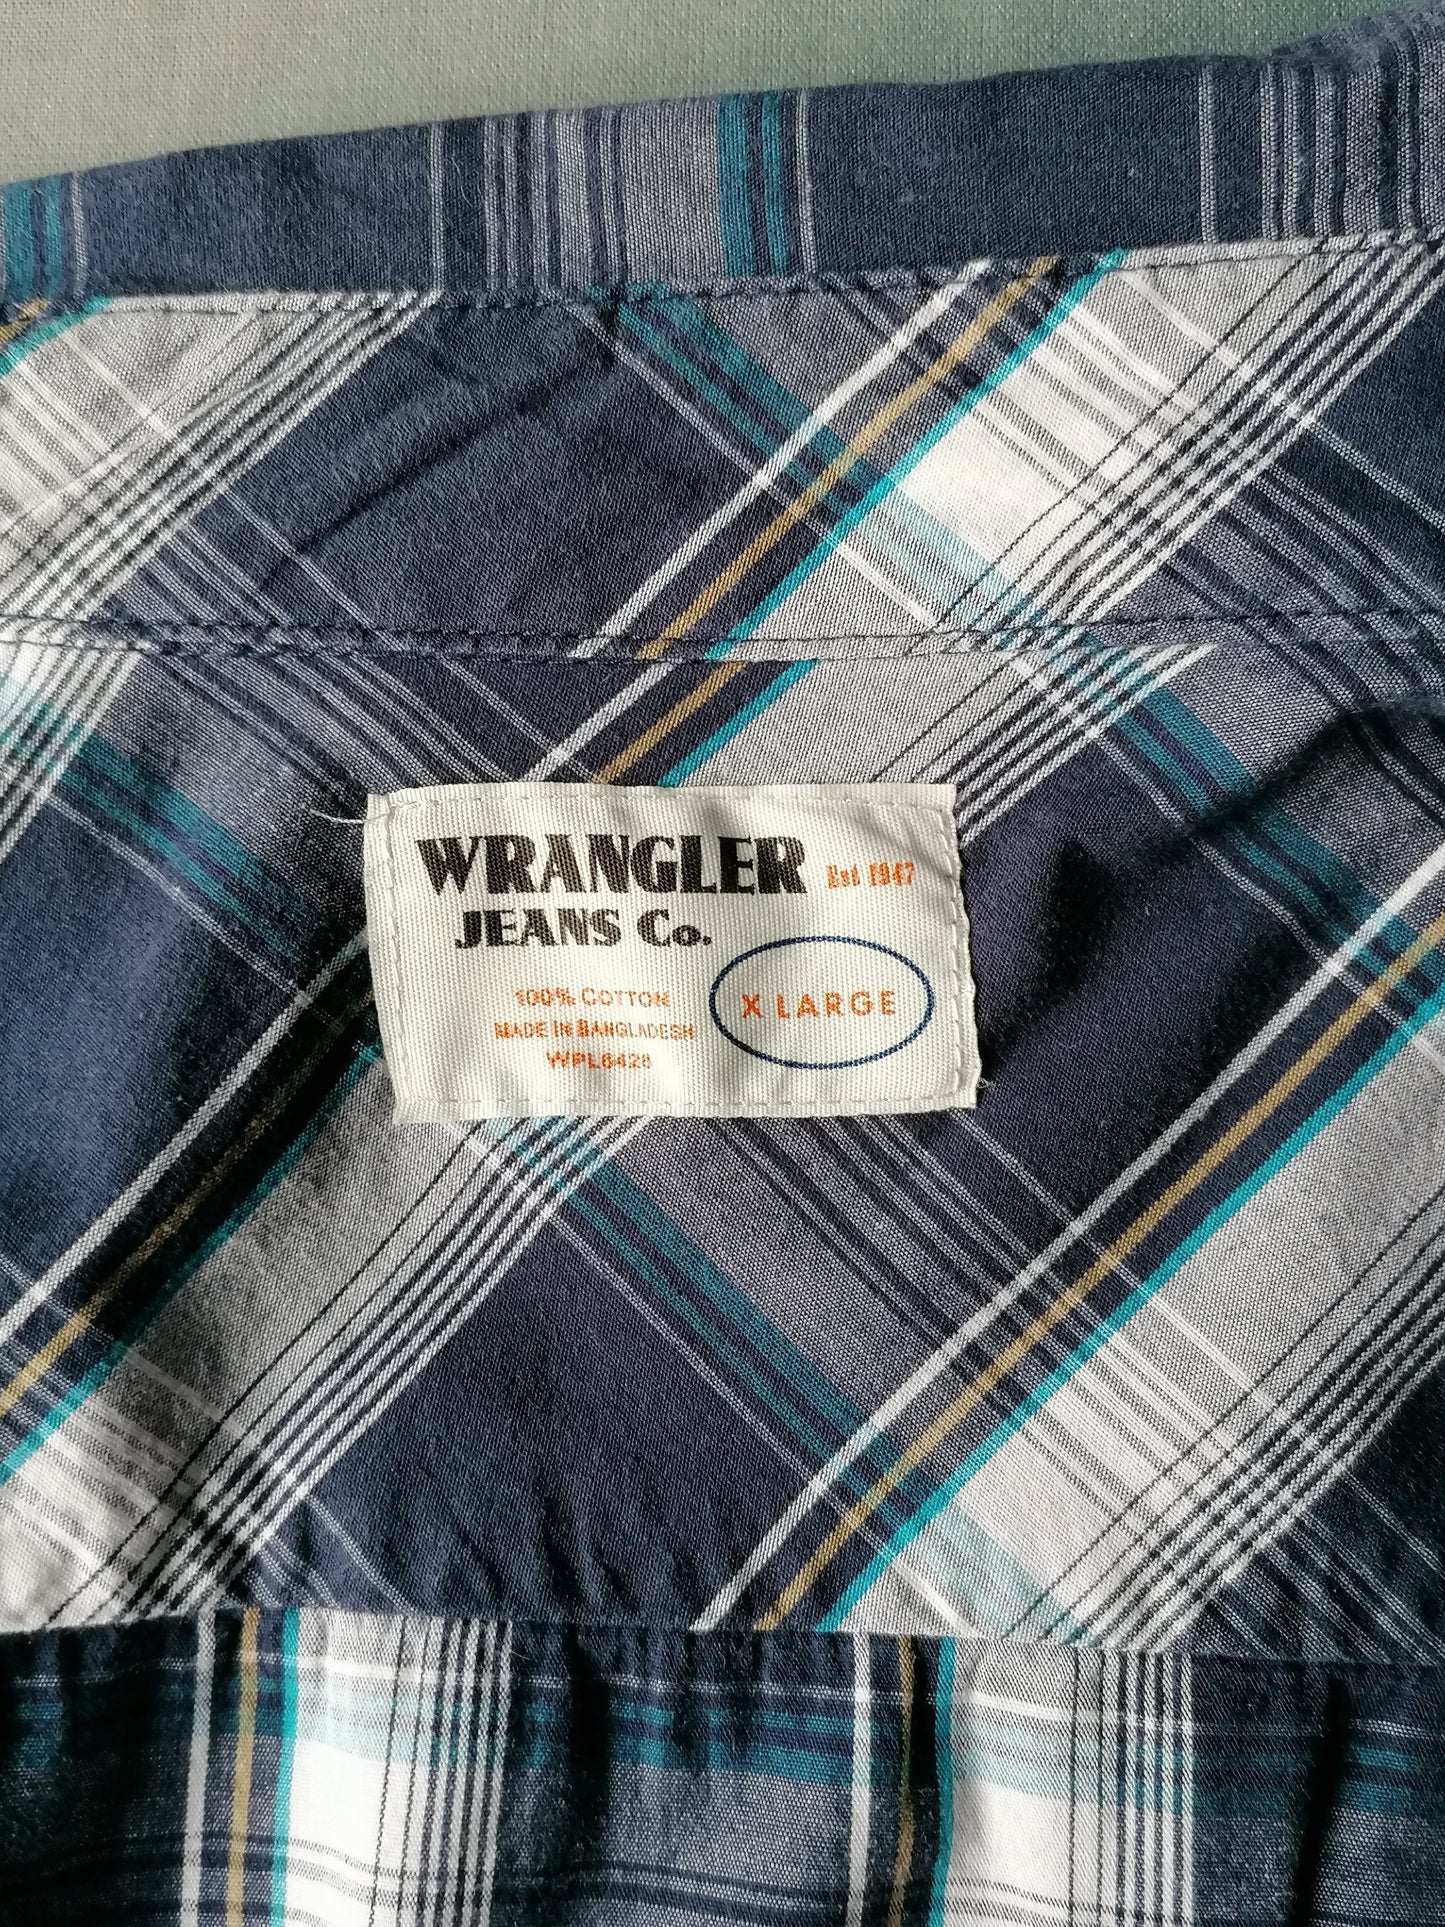 Camisa de Wrangler. Motivo a cuadros blanco azul. Tamaño XL.